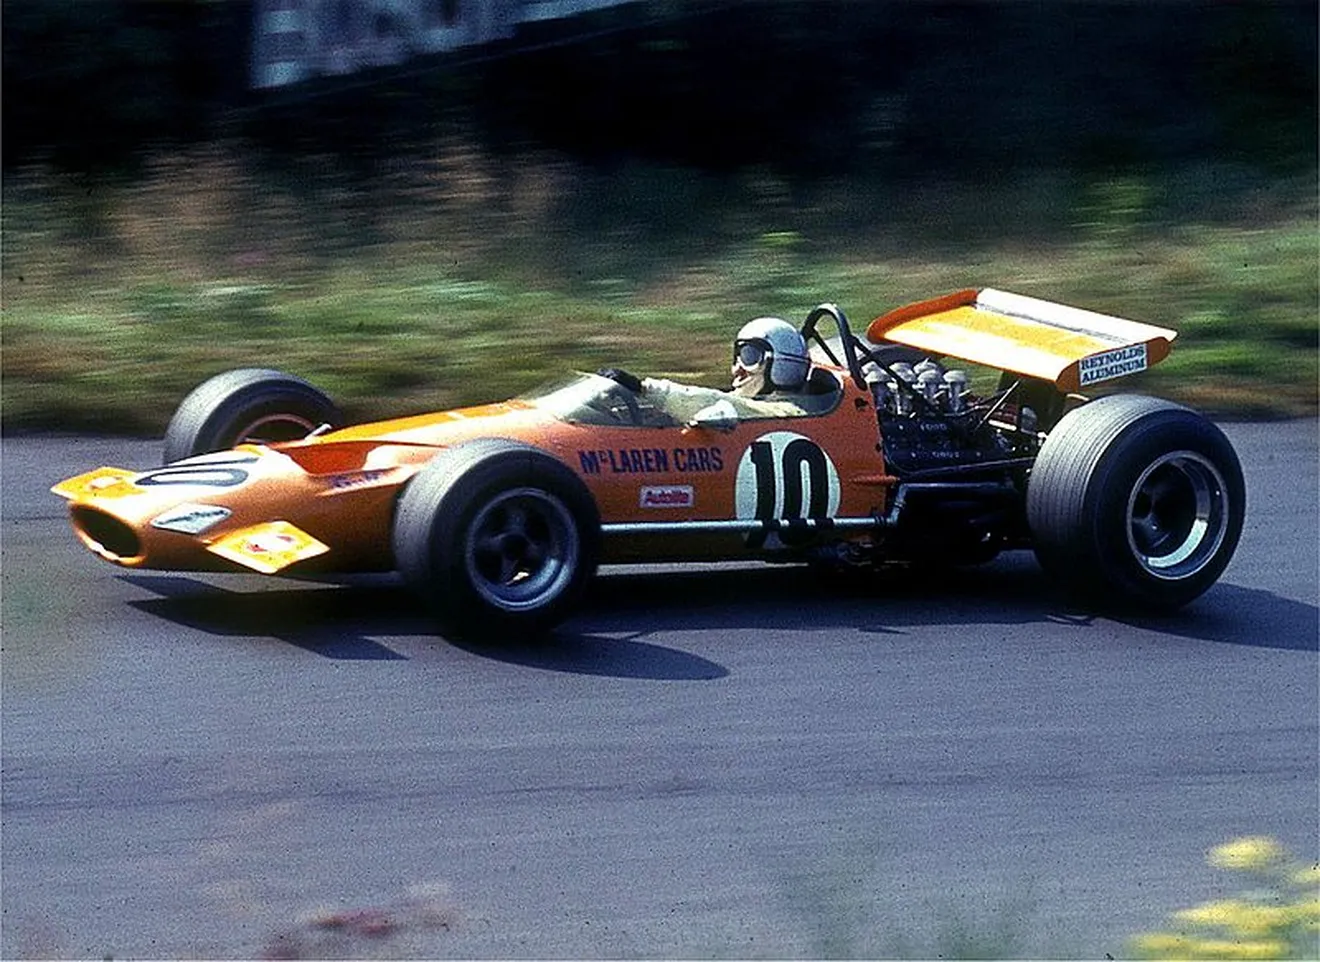 [Vídeo] GP F1 Bélgica 1968: alfa y omega para McLaren en el viejo Spa